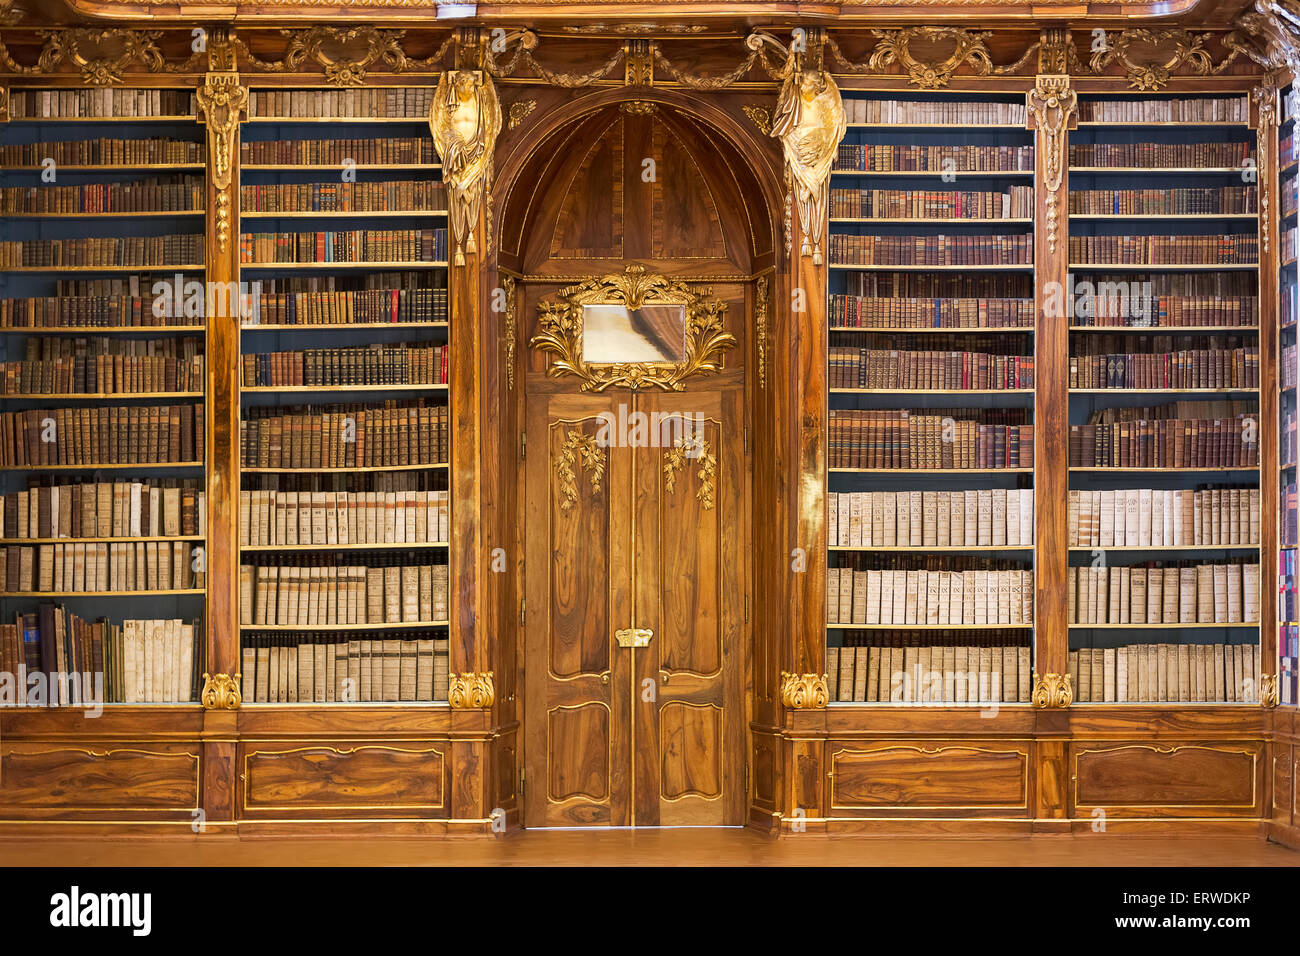 PRAGUE, RÉPUBLIQUE TCHÈQUE - janvier 04, 2015 : Salle de philosophie de la bibliothèque du monastère de Strahov Banque D'Images